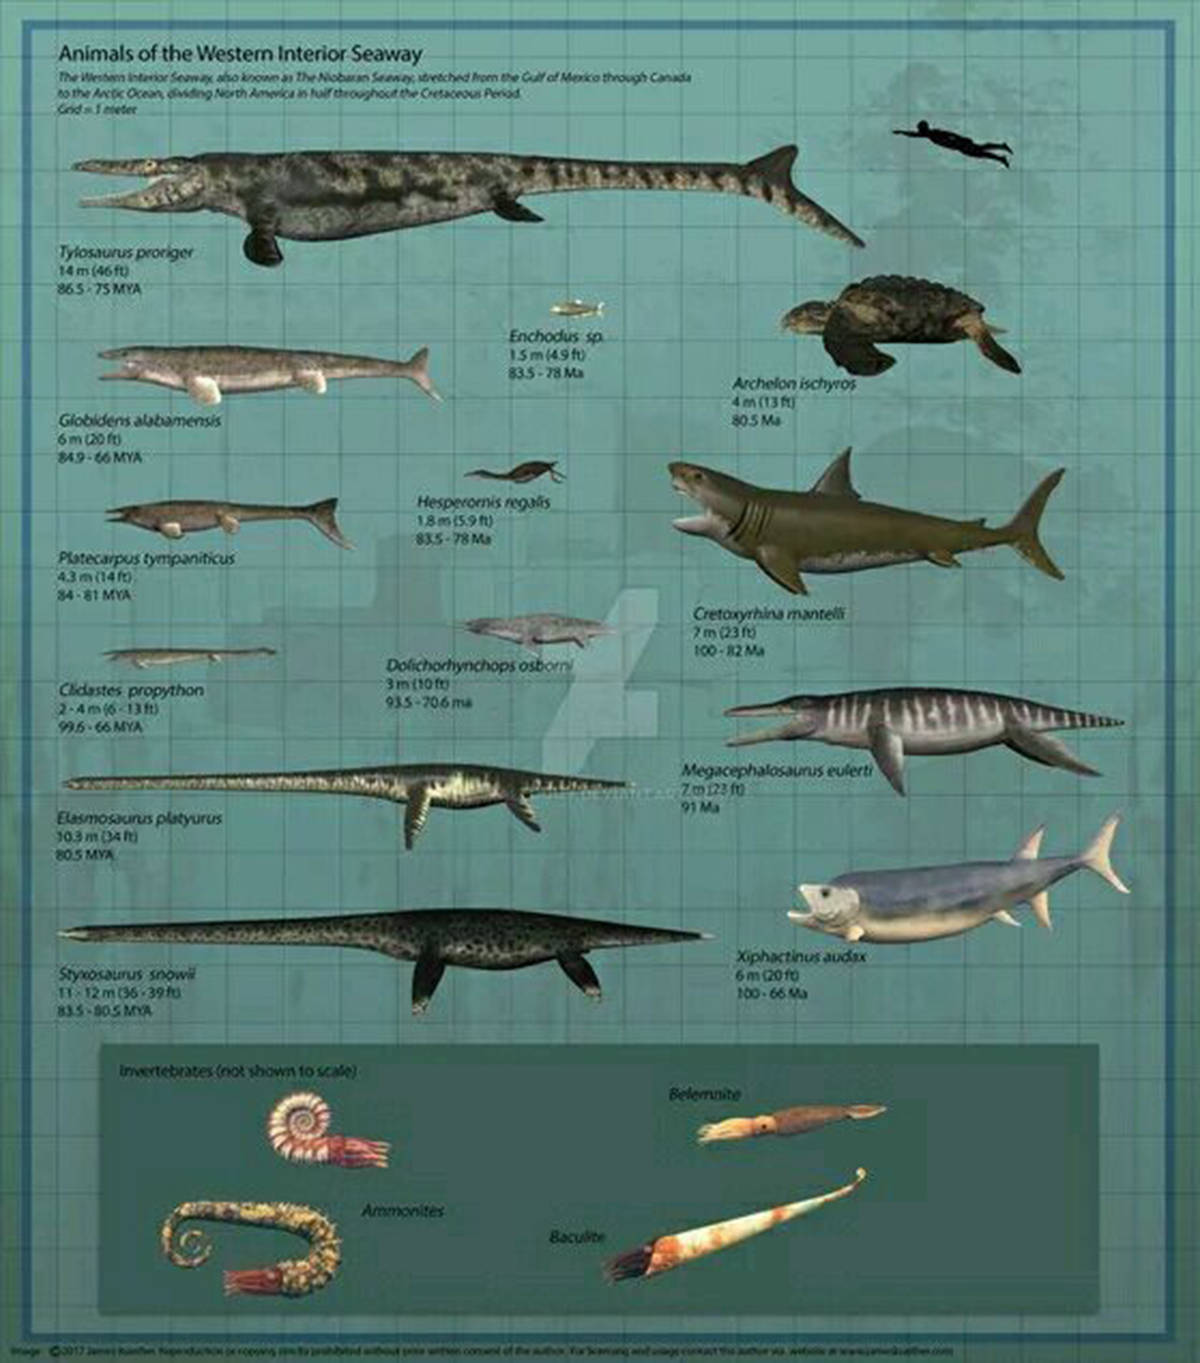 沧龙与恐龙同宗,属于恐龙的旁系亲属,它们在海中孕育,再进化来到陆上